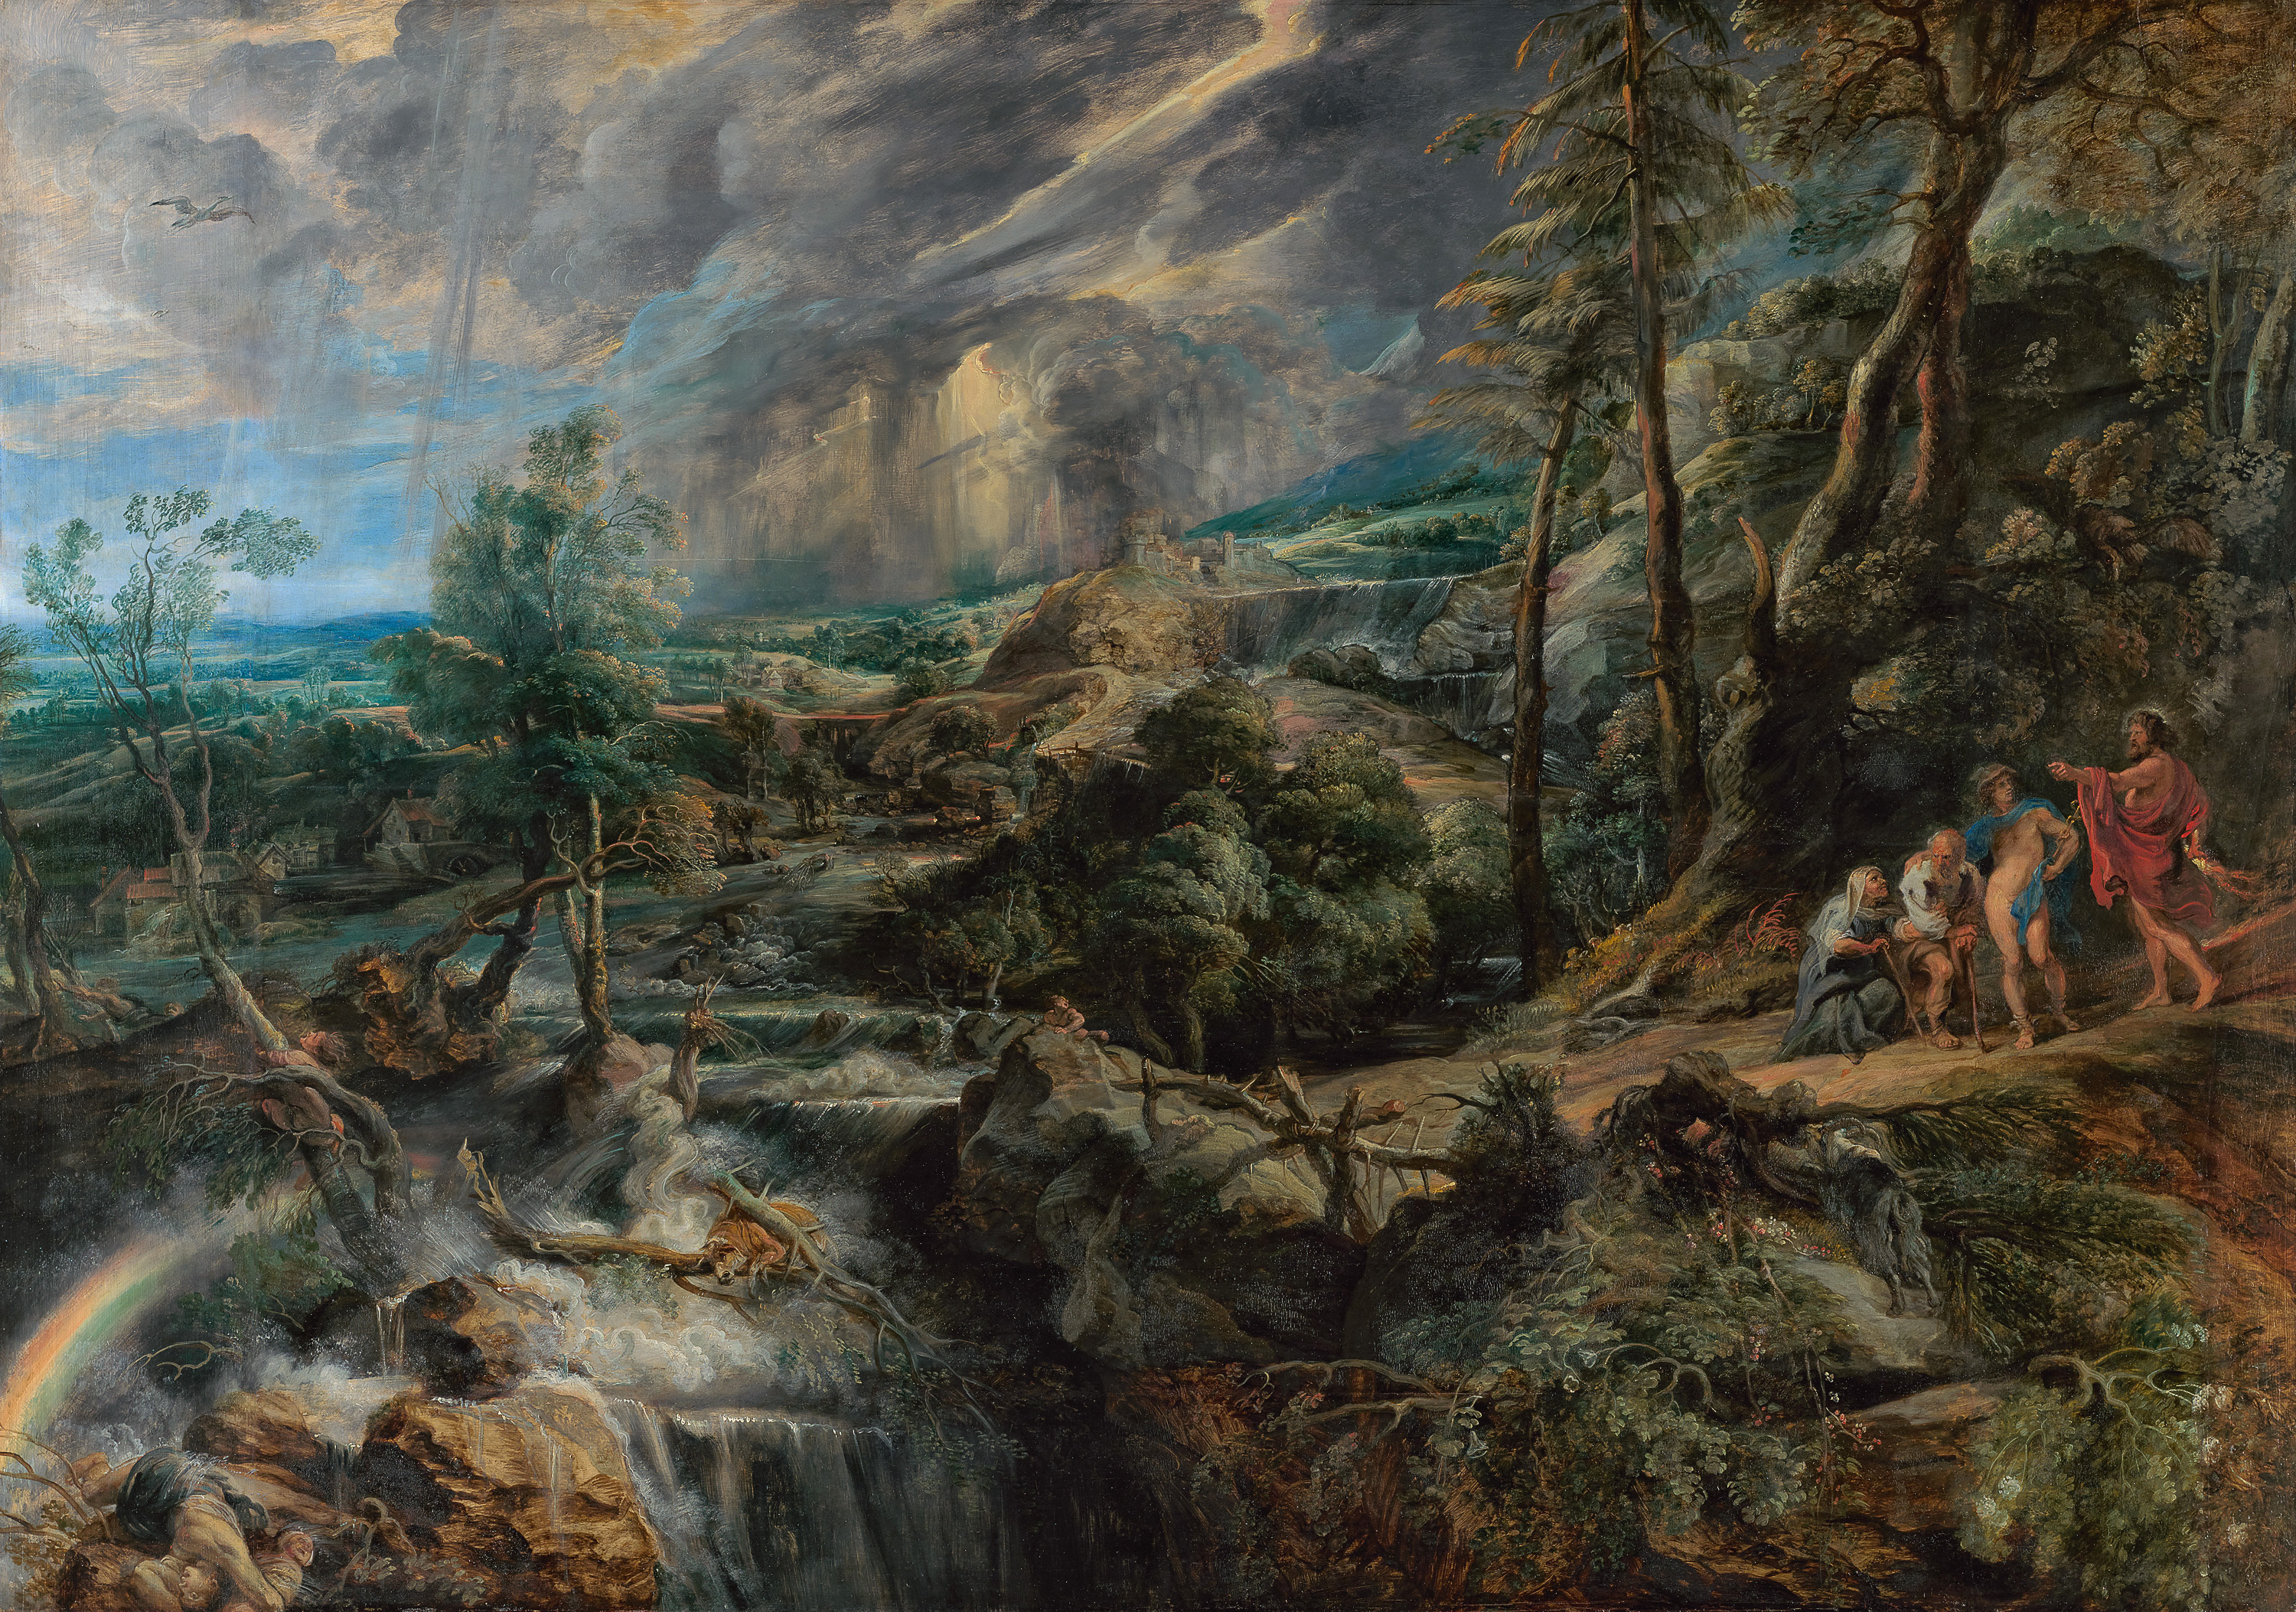 斐利蒙和柏西斯的风景画 by 彼得 · 保罗 · 鲁本斯 - 1620/1625 - 208.5 x 146 cm 艺术史博物馆